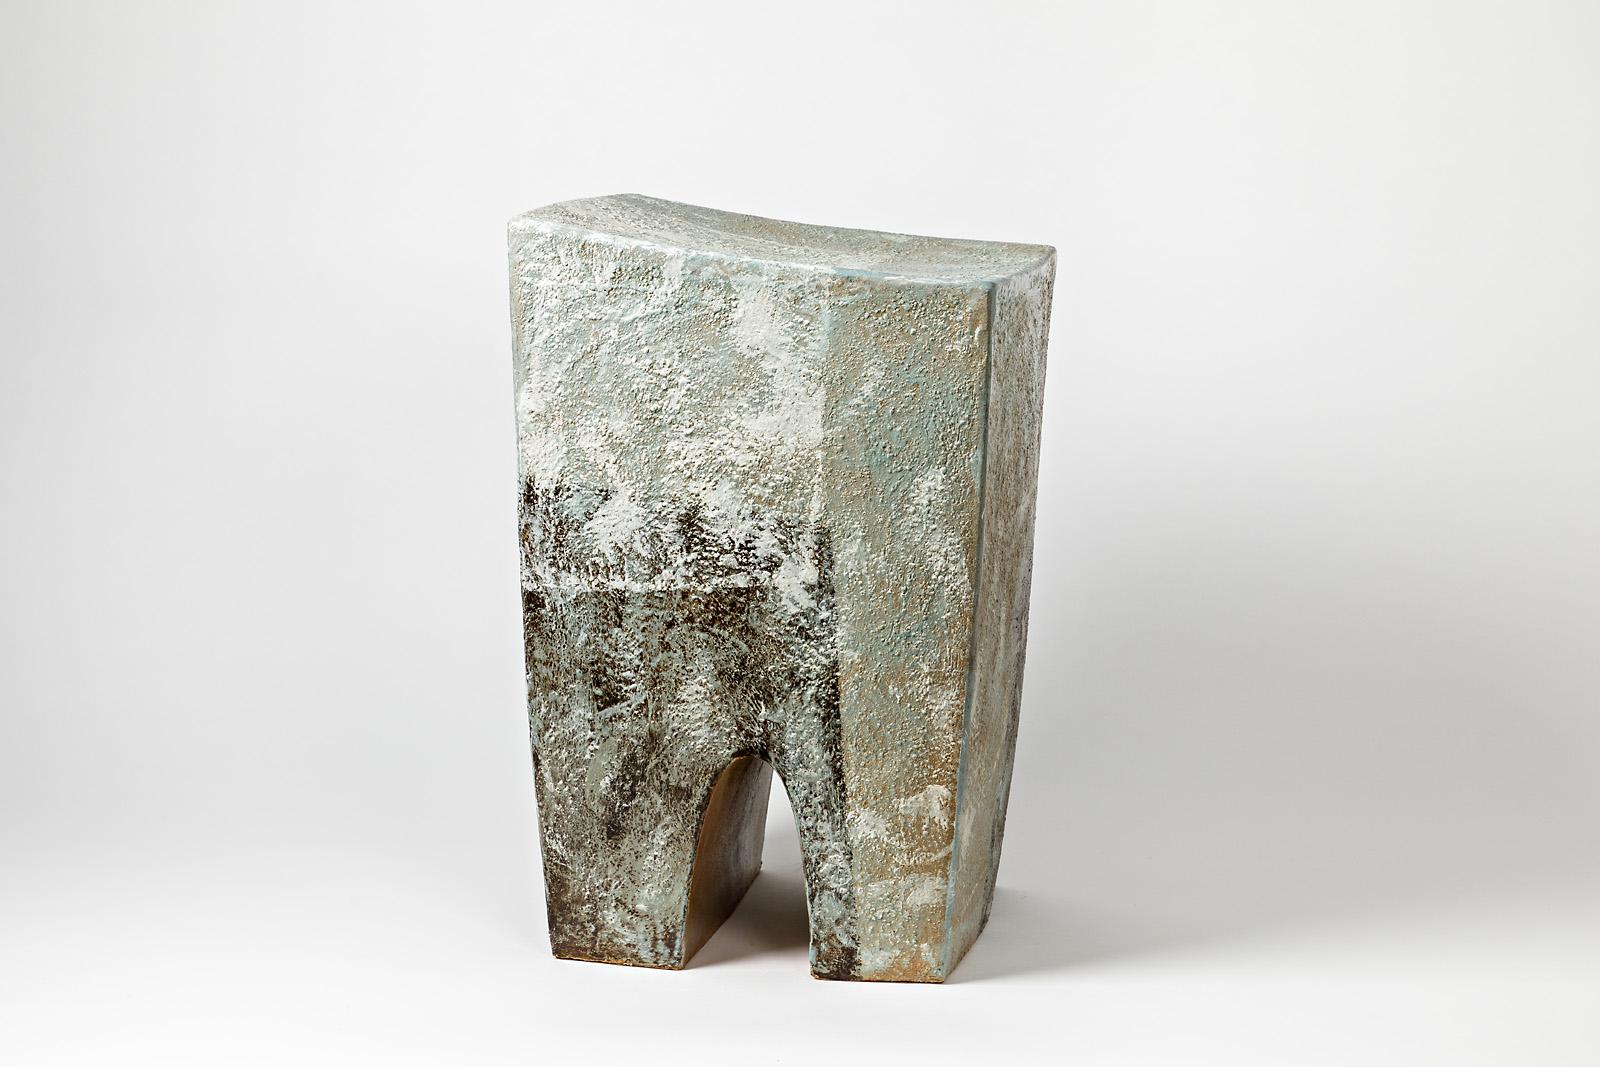 Tabouret en céramique de Martin Goerg avec décorations émaillées.
Cette pièce peut être placée à l'intérieur ou à l'extérieur.
Conditions d'origine parfaites.
2018.
Un set de 8 pièces est disponible.